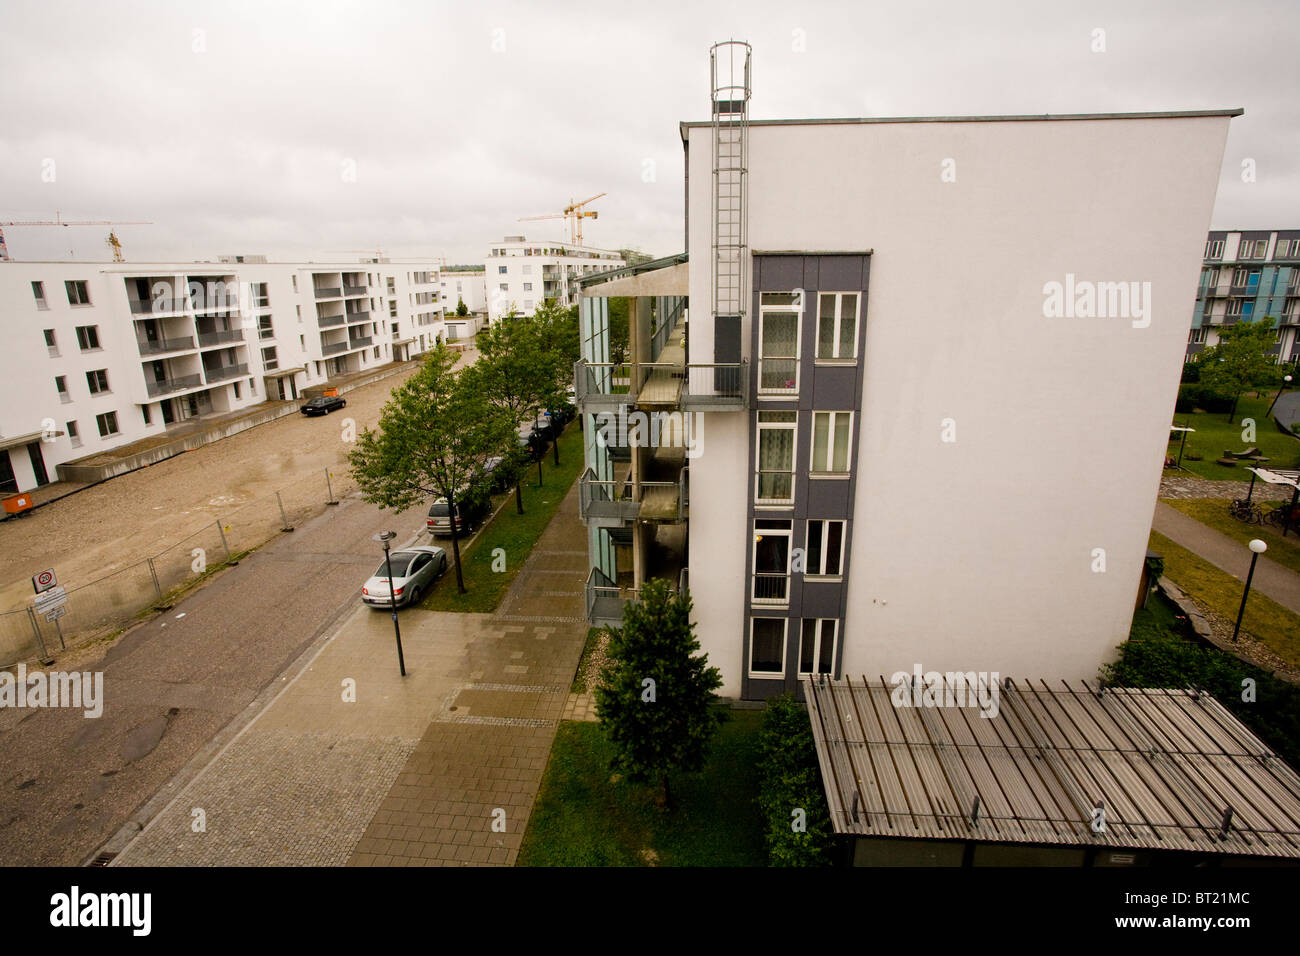 Eine triste und öde soziale Wohnsiedlung in Deutschland an einem bewölkten und feuchten Tag. Stockfoto